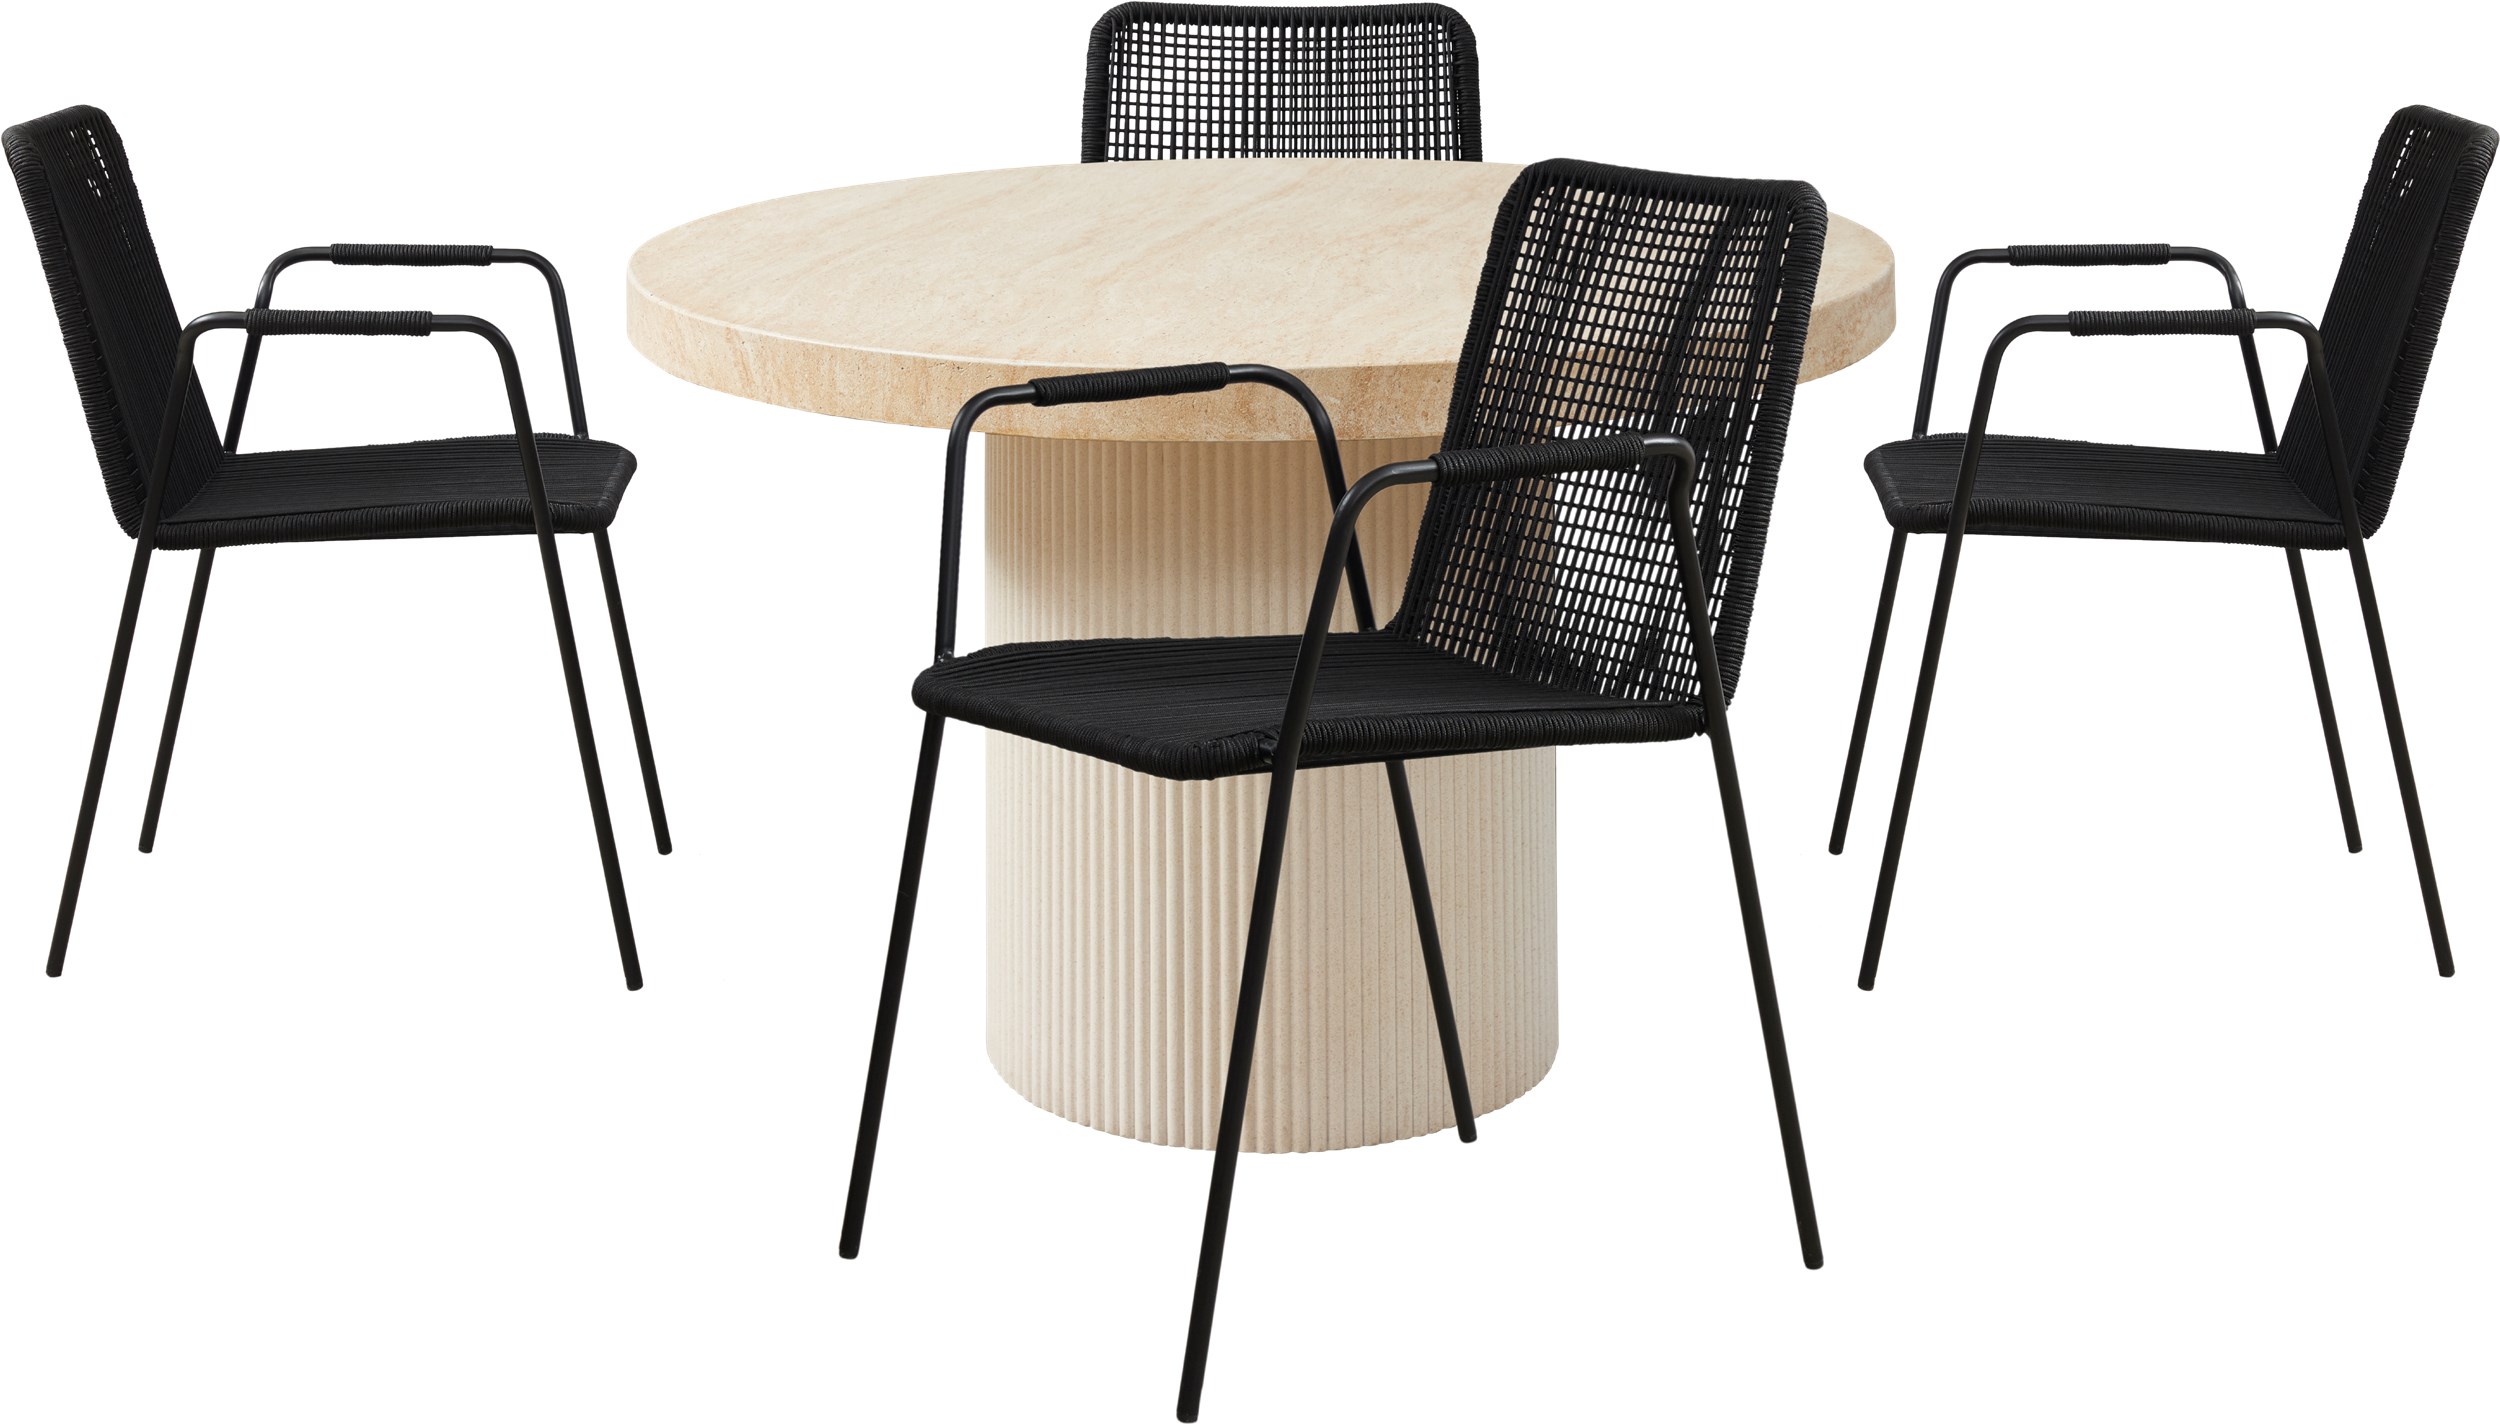 Marca Trädgårdsset med 1 bord natur + 4 stolar svart